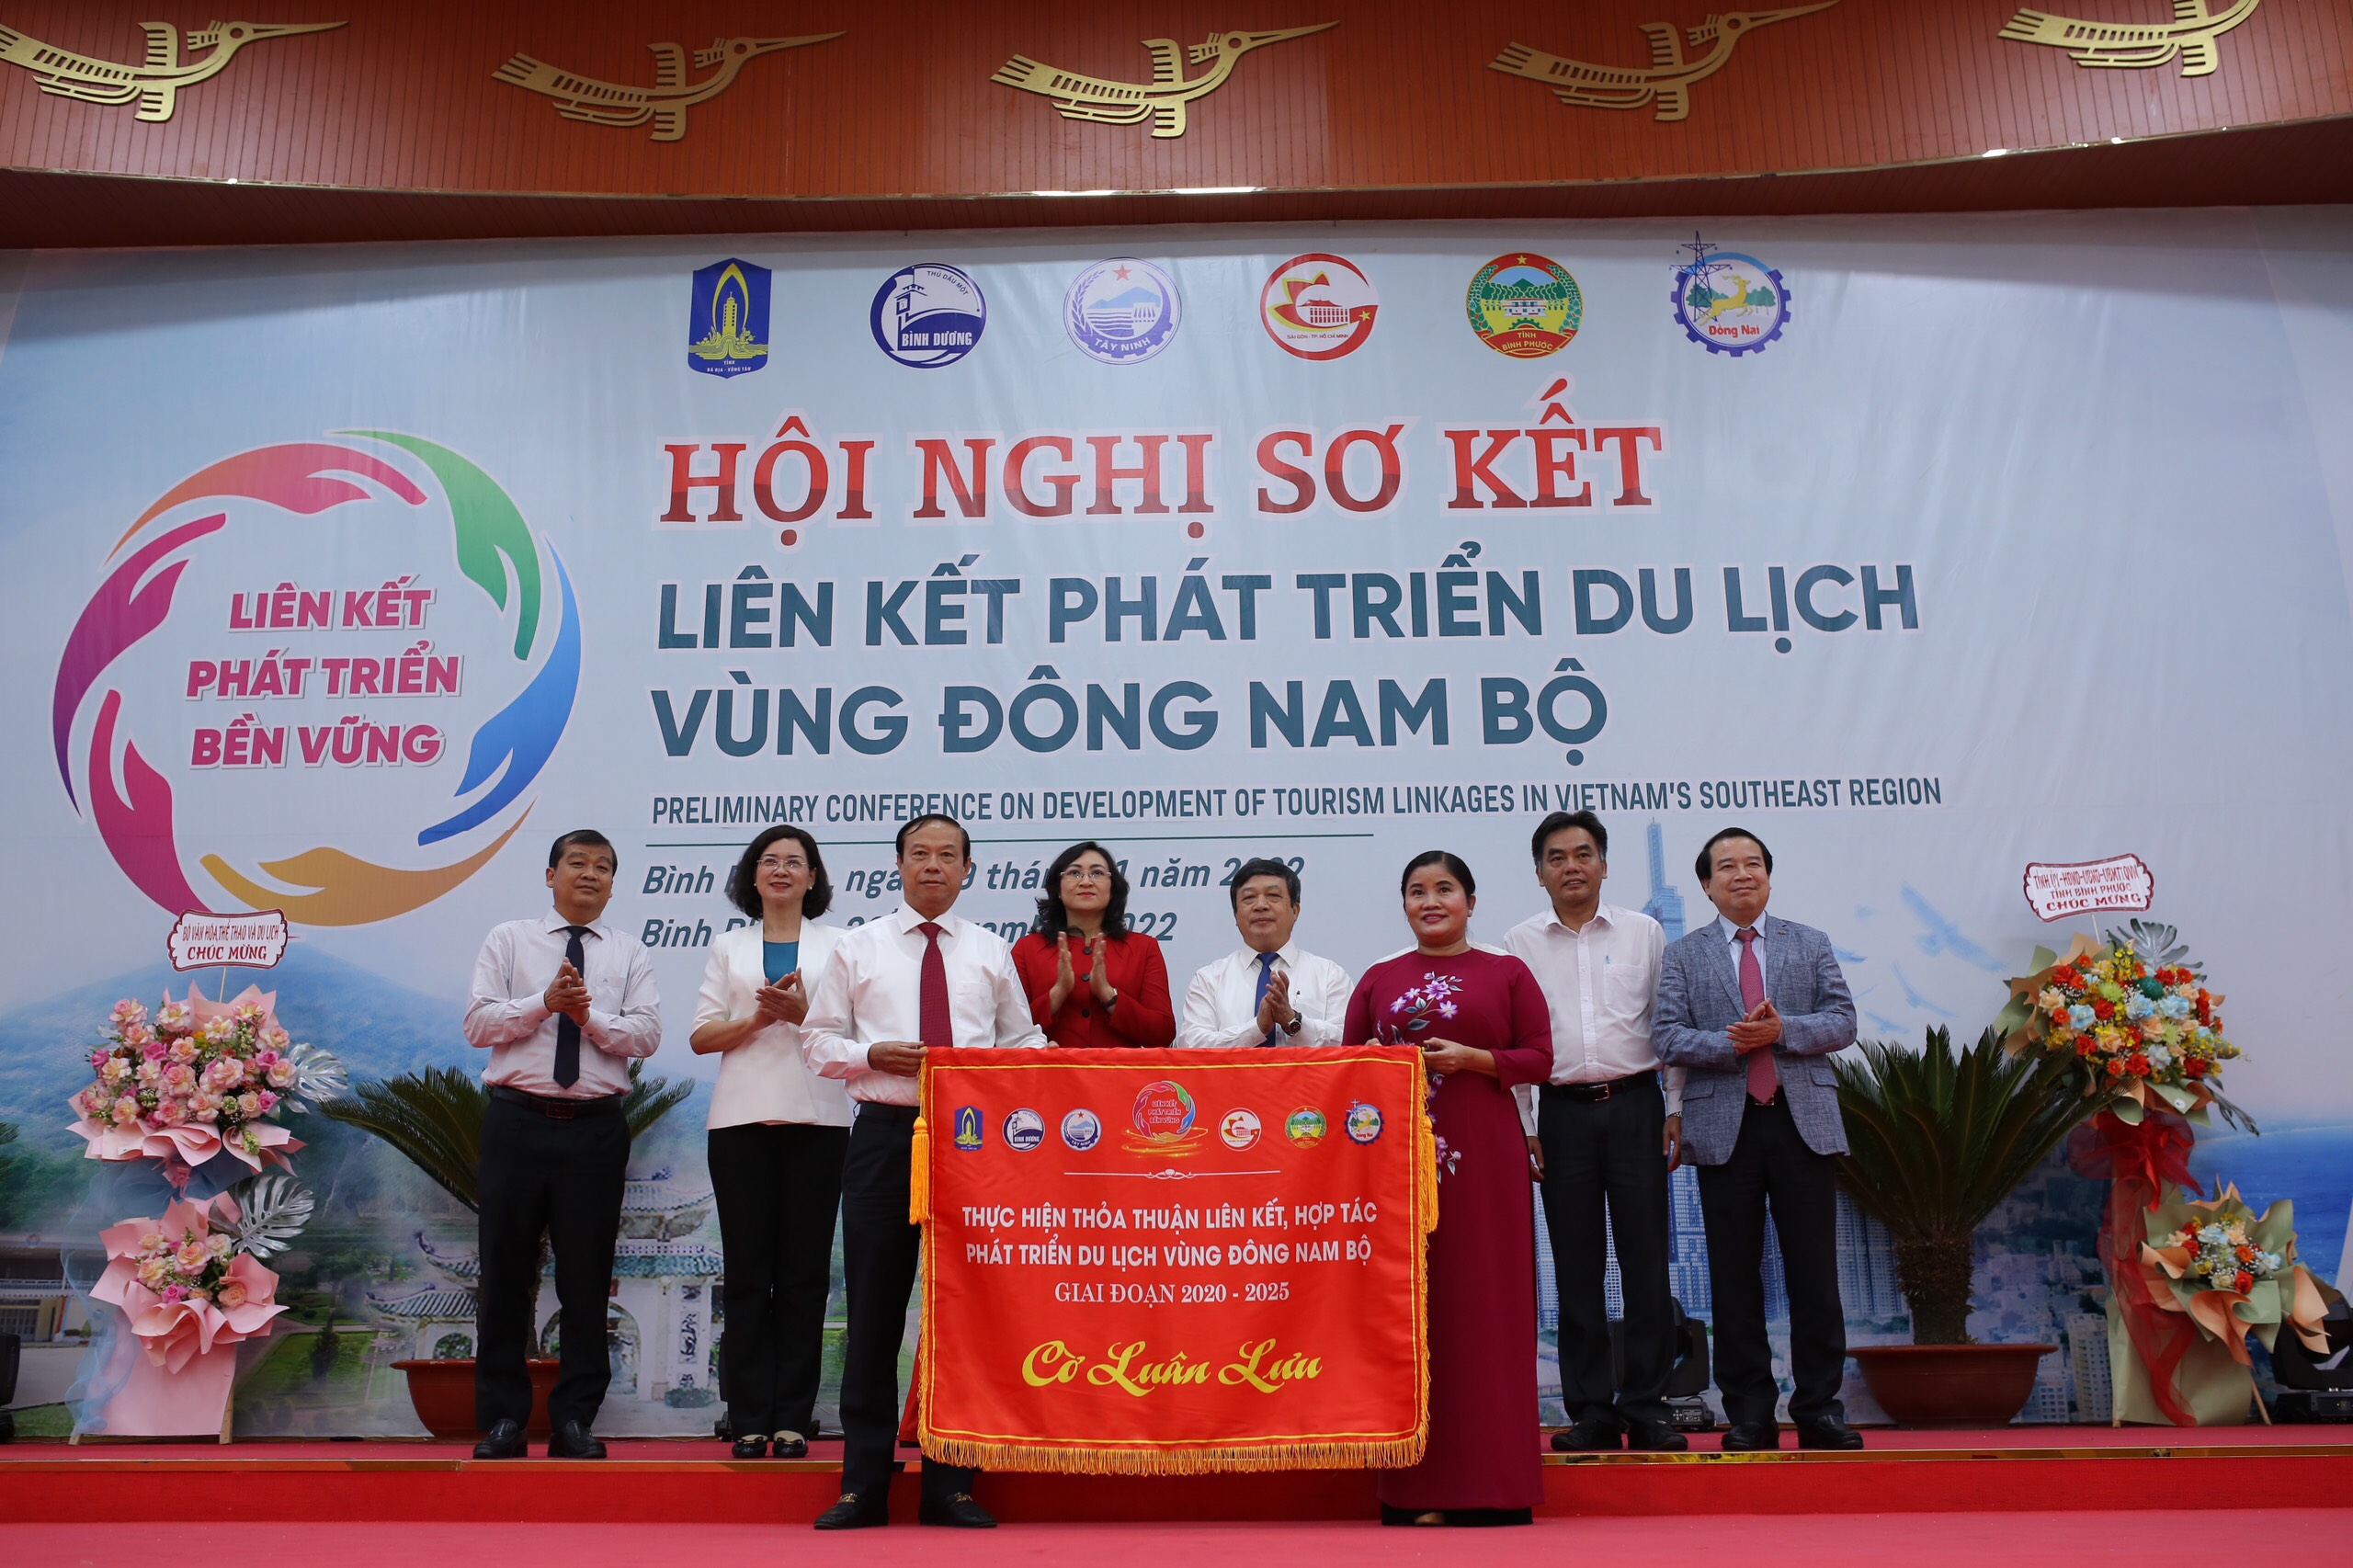 Tỉnh Bình Phước trao cờ luân lưu tổ chức hội nghị cho tỉnh Bà Rịa-Vũng Tàu